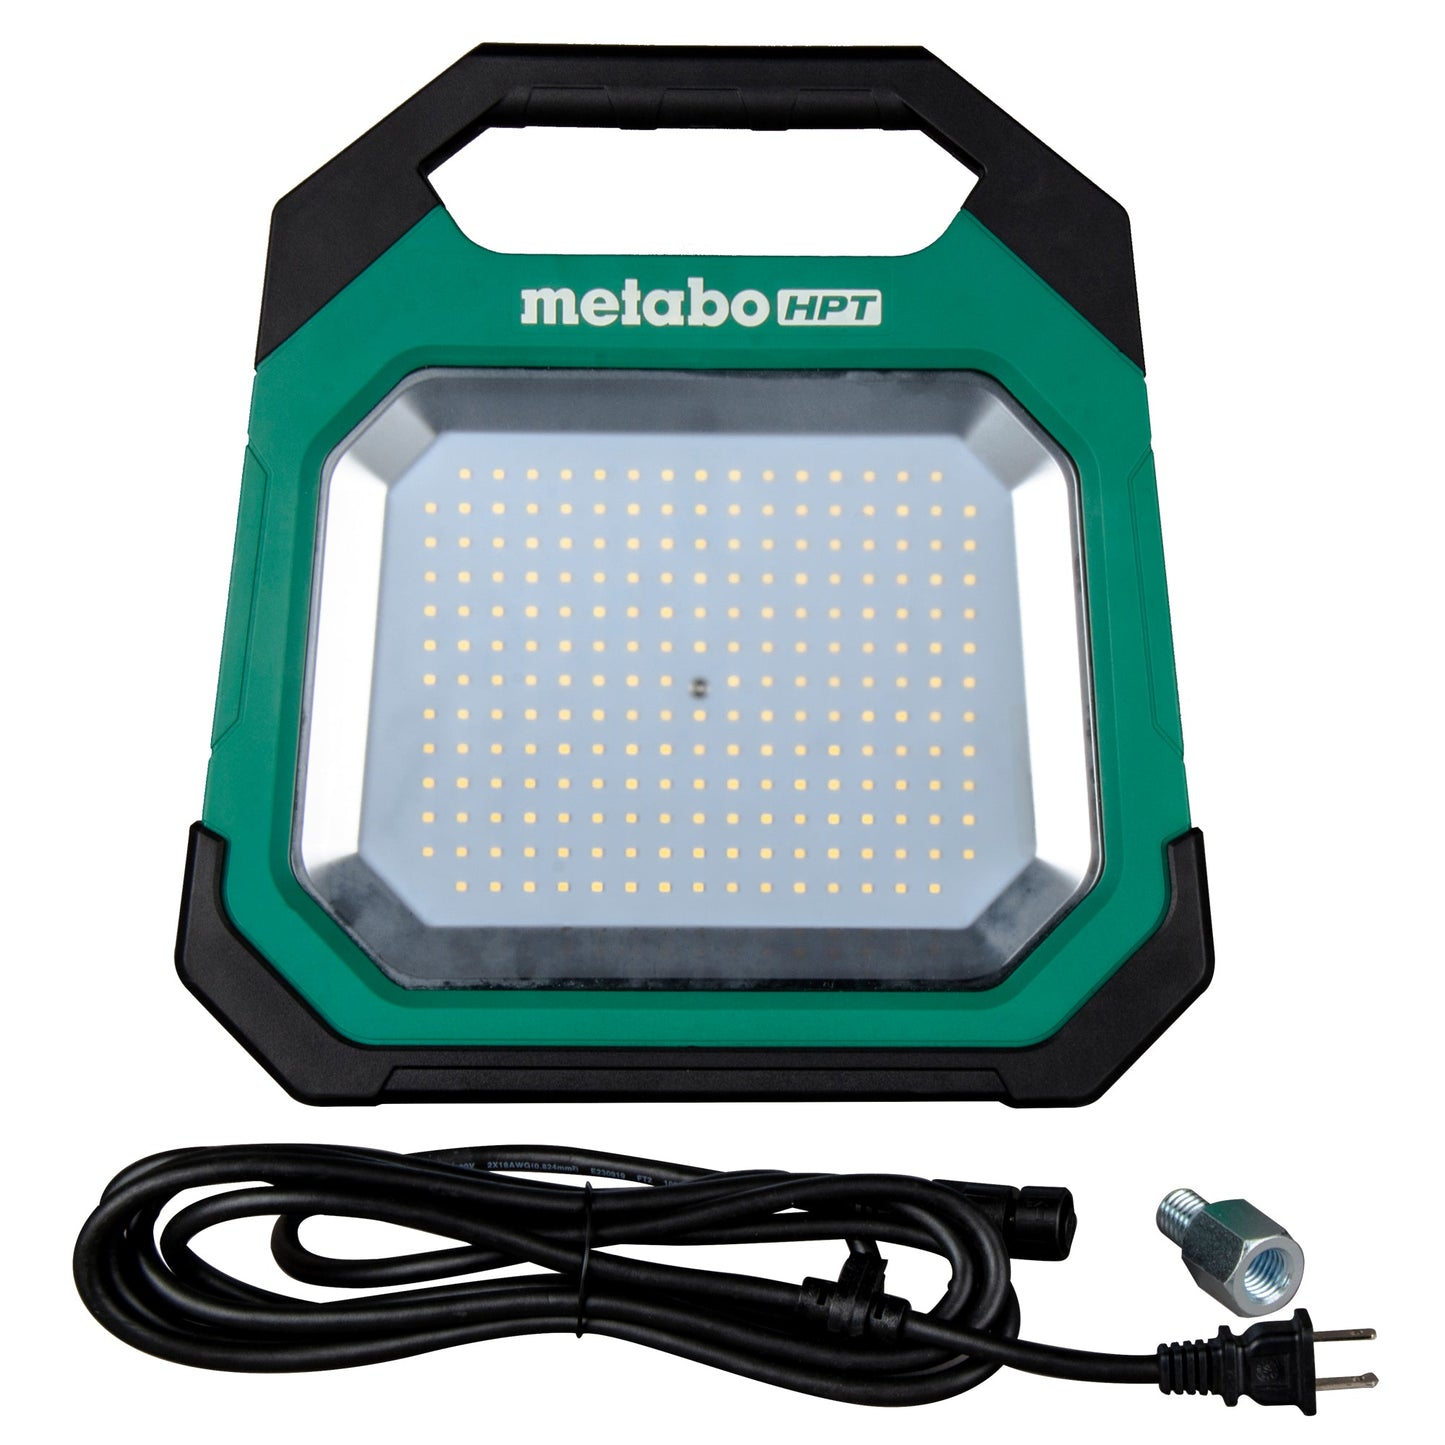 Metabo HPT UB18DDQ4M 18V MultiVolt Cordless 10,000 Lumen LED Work Light (Tool Body Only)